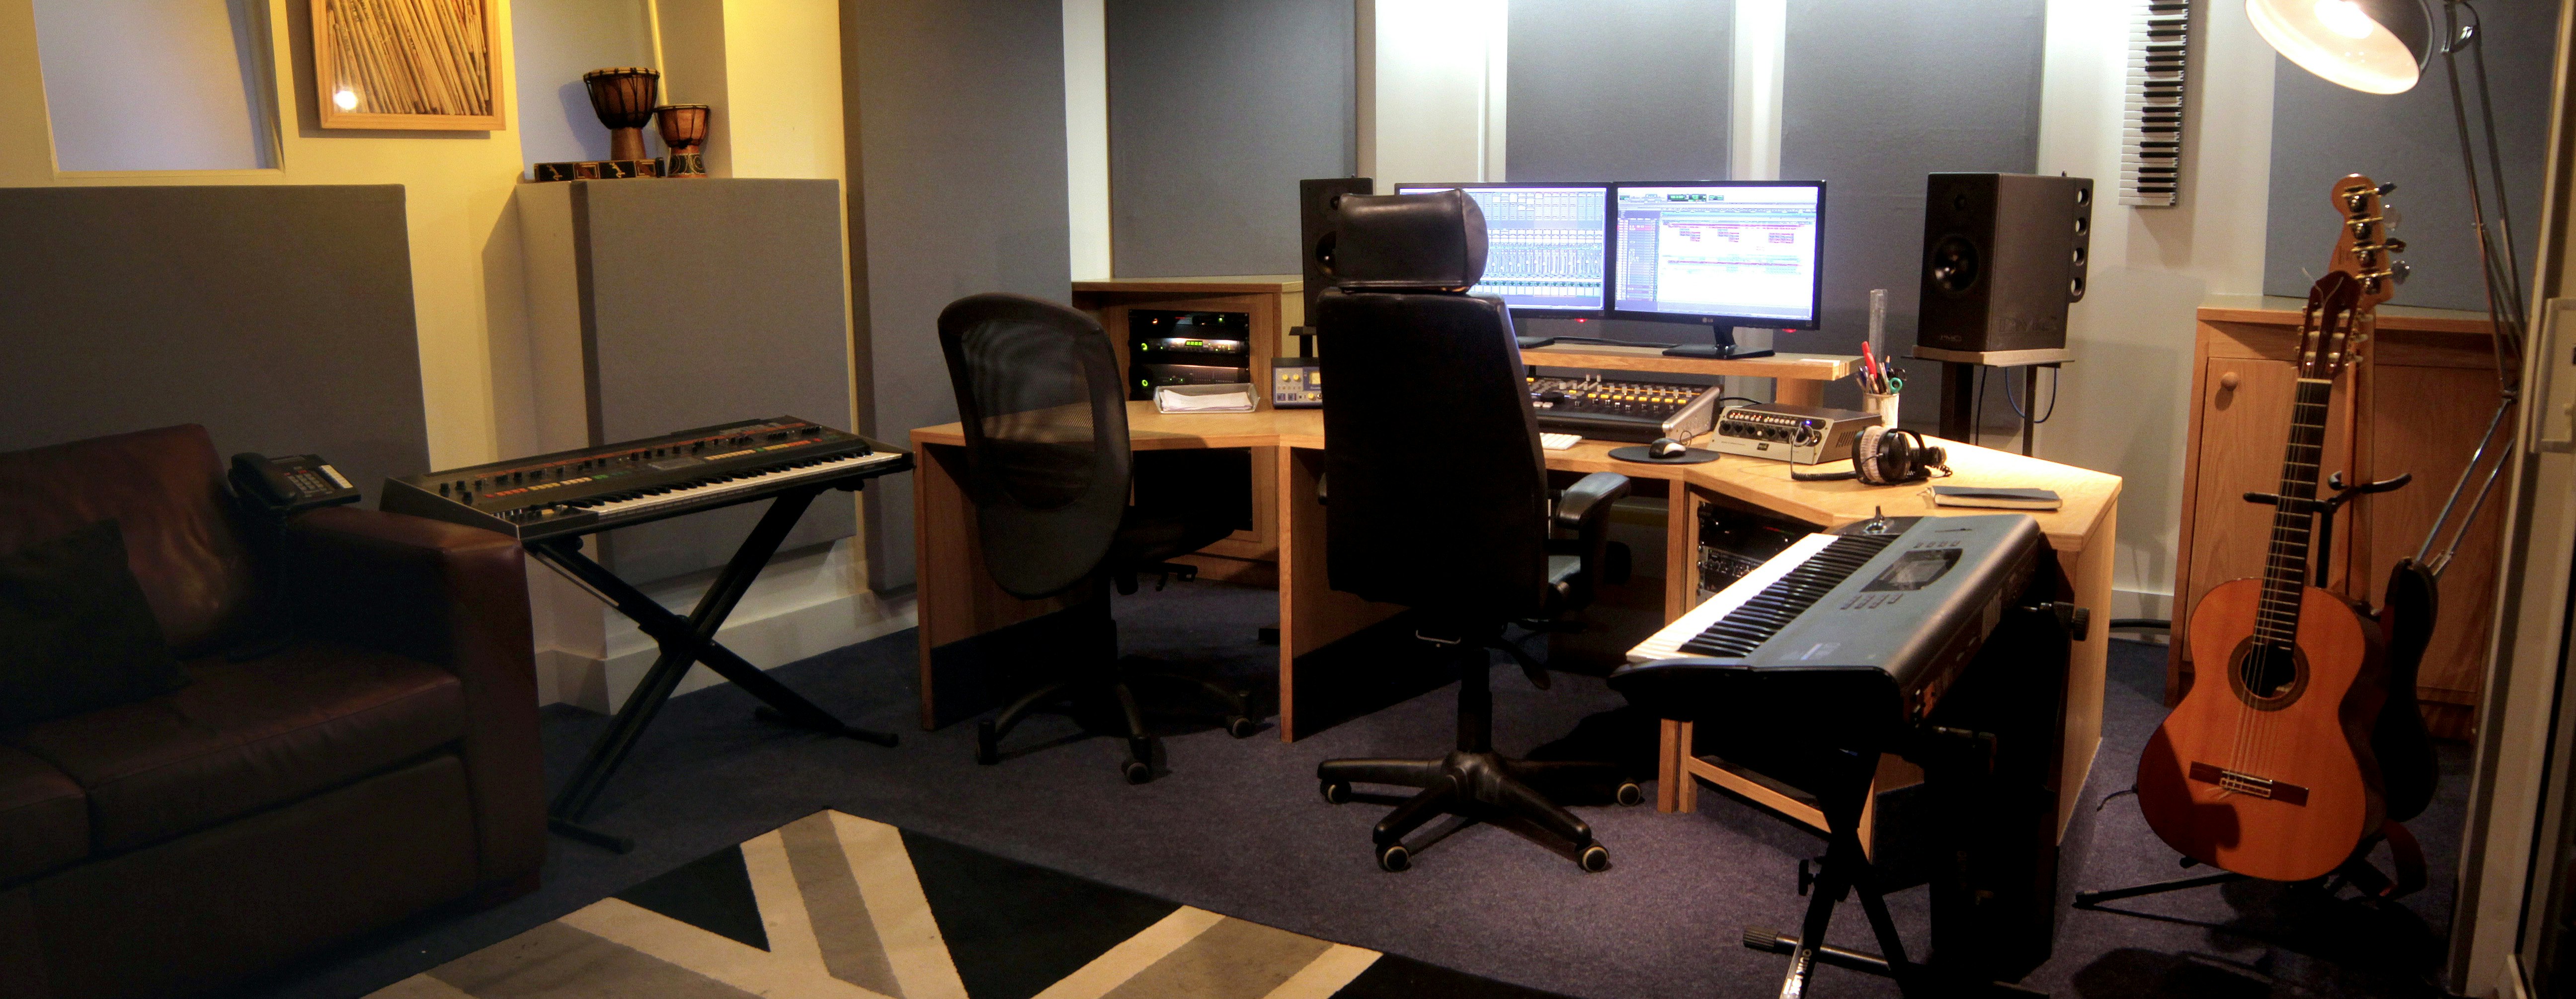 Recording Studios Venues in Central London - Price Studios Ltd